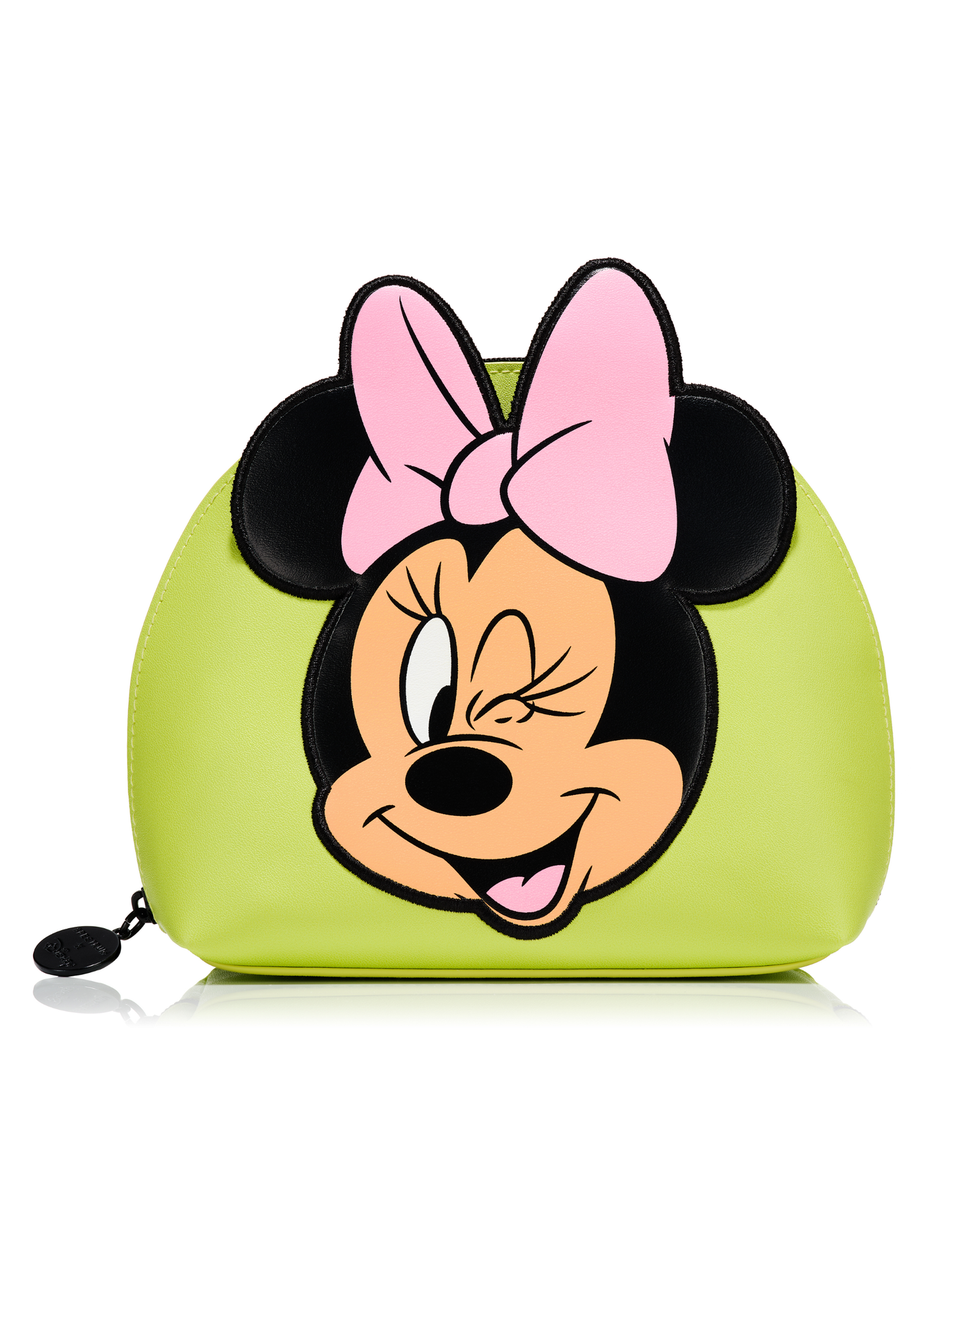 Spectrum Disney So Much Minnie Makeup bag